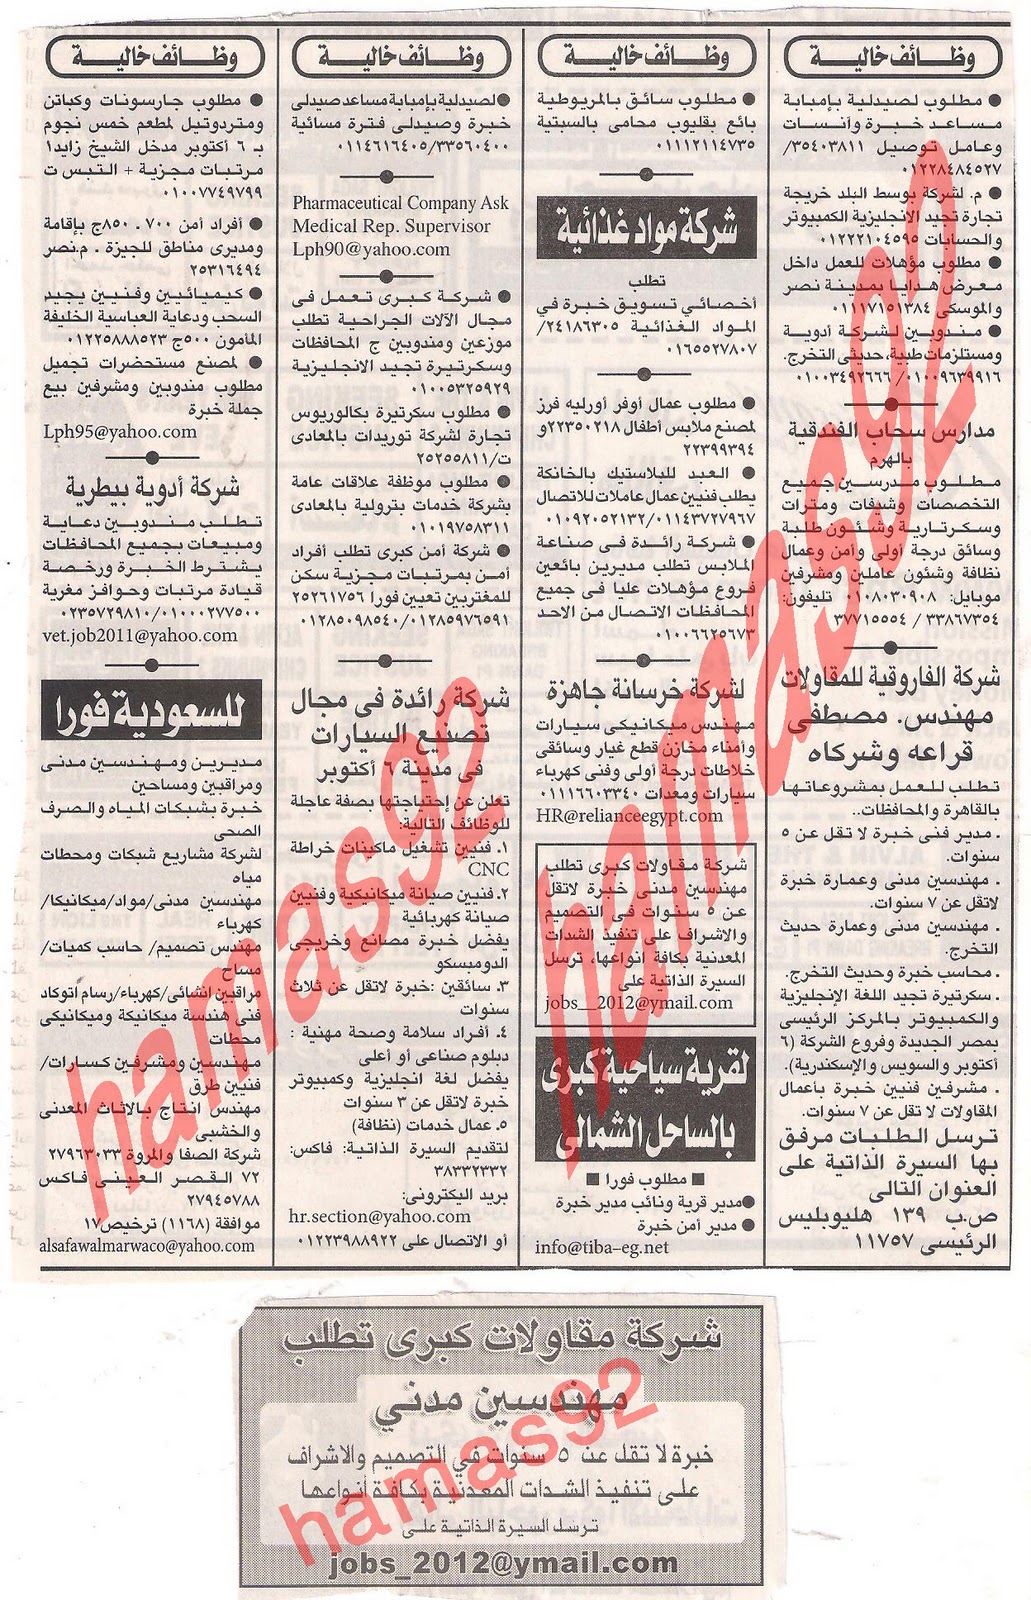 وظائف جريدة اهرام الجمعة 16 ديسمبر 2011 , الجزء الاول Picture+006